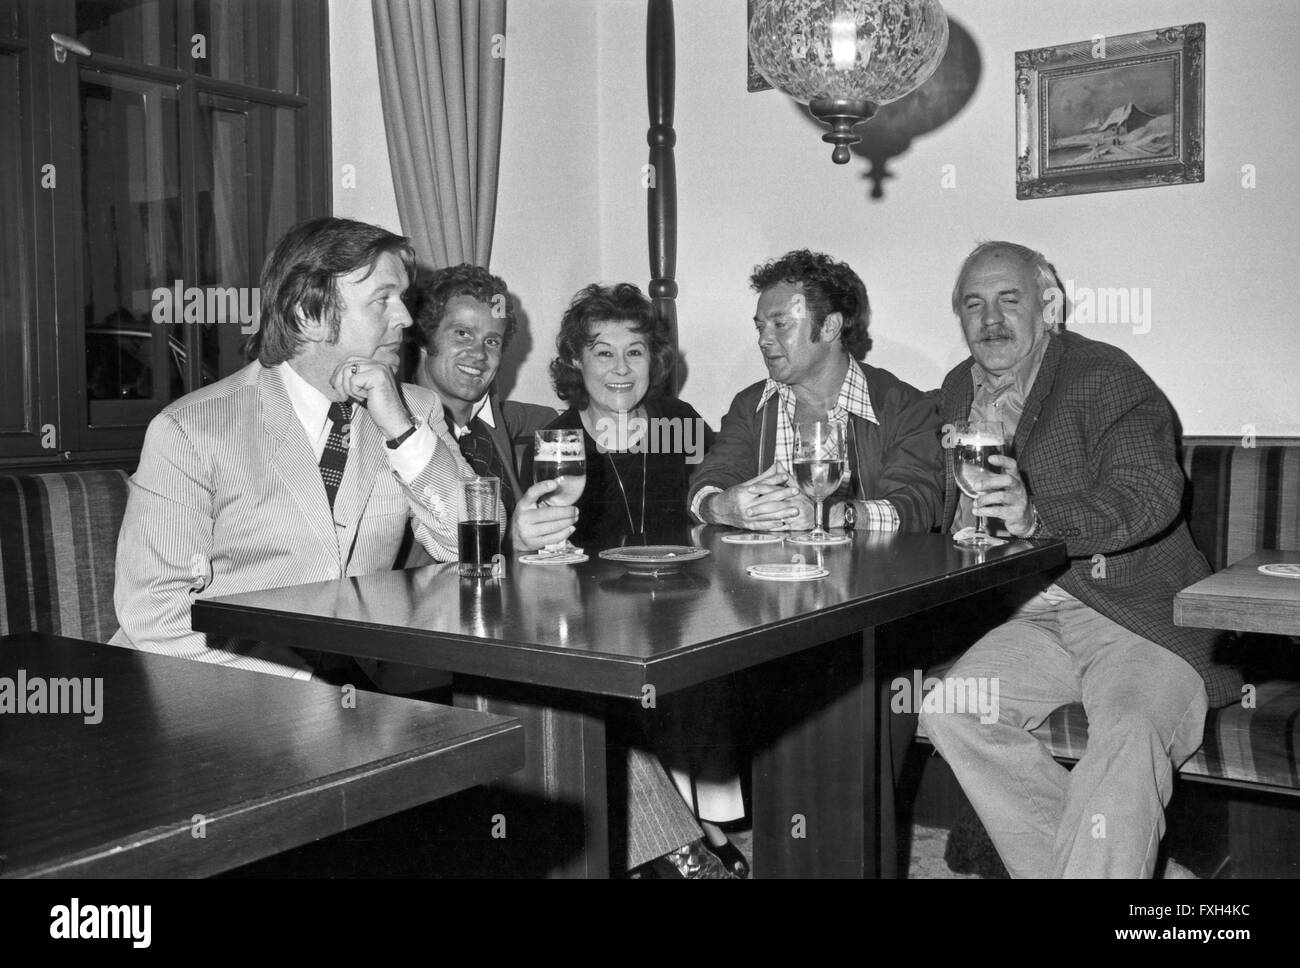 Der Österreichische Schauspieler Werner Pochath (2. v. l.) Und Margit Symo (Mitte) Beim Bier, 1970er Jahre Deutschland. Österreichische Schauspieler Werner Pochath (2. von links) und Margit Symo mit einem Bier, Deutschland der 1970er Jahre. 24x36swNegVM15 Stockfoto